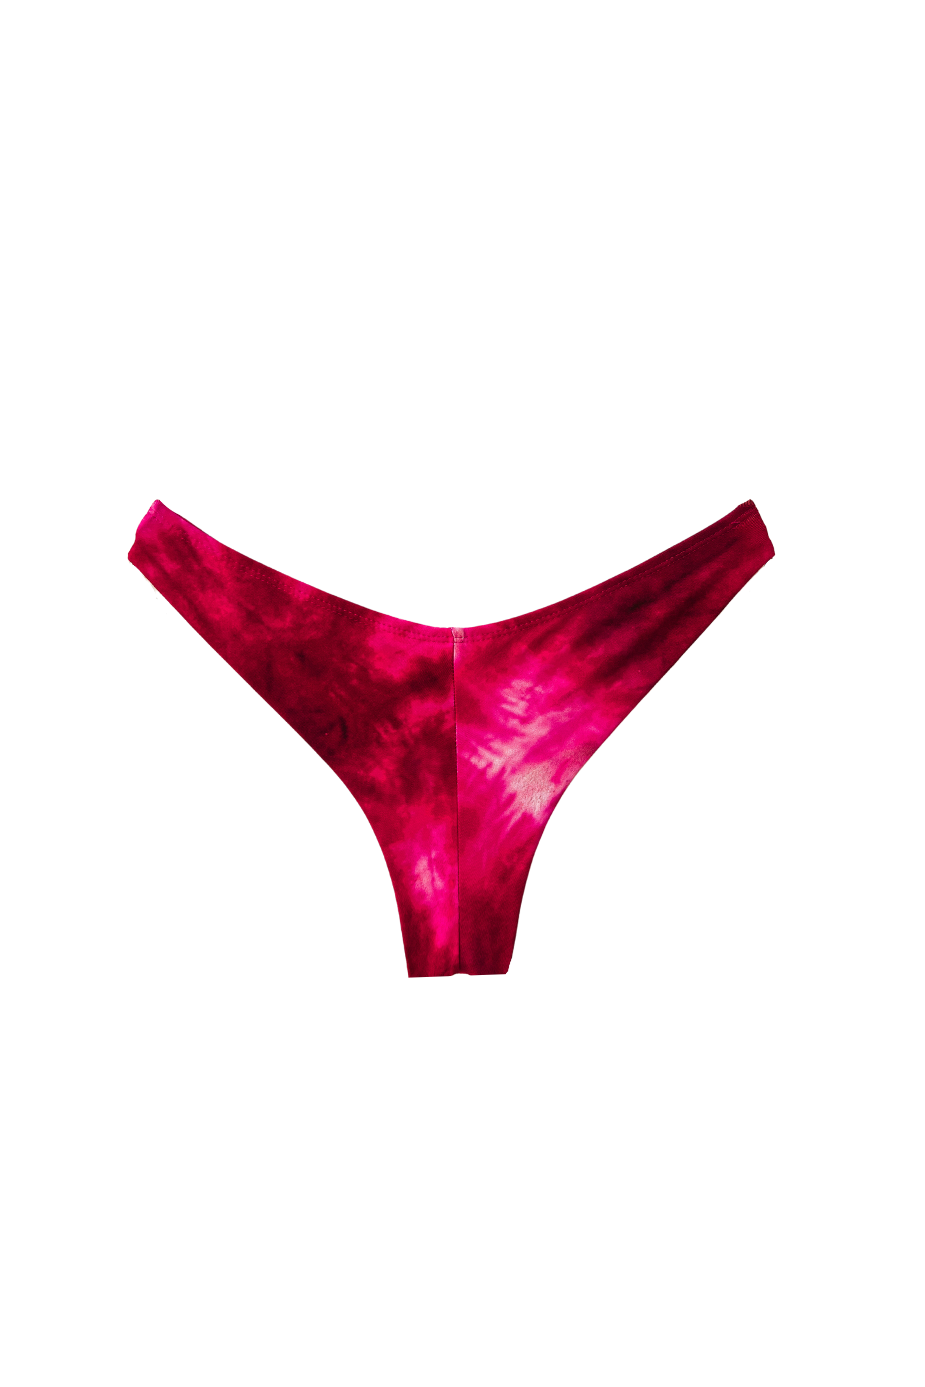 velvet Victoria Secret Pink burgundy velvet thong